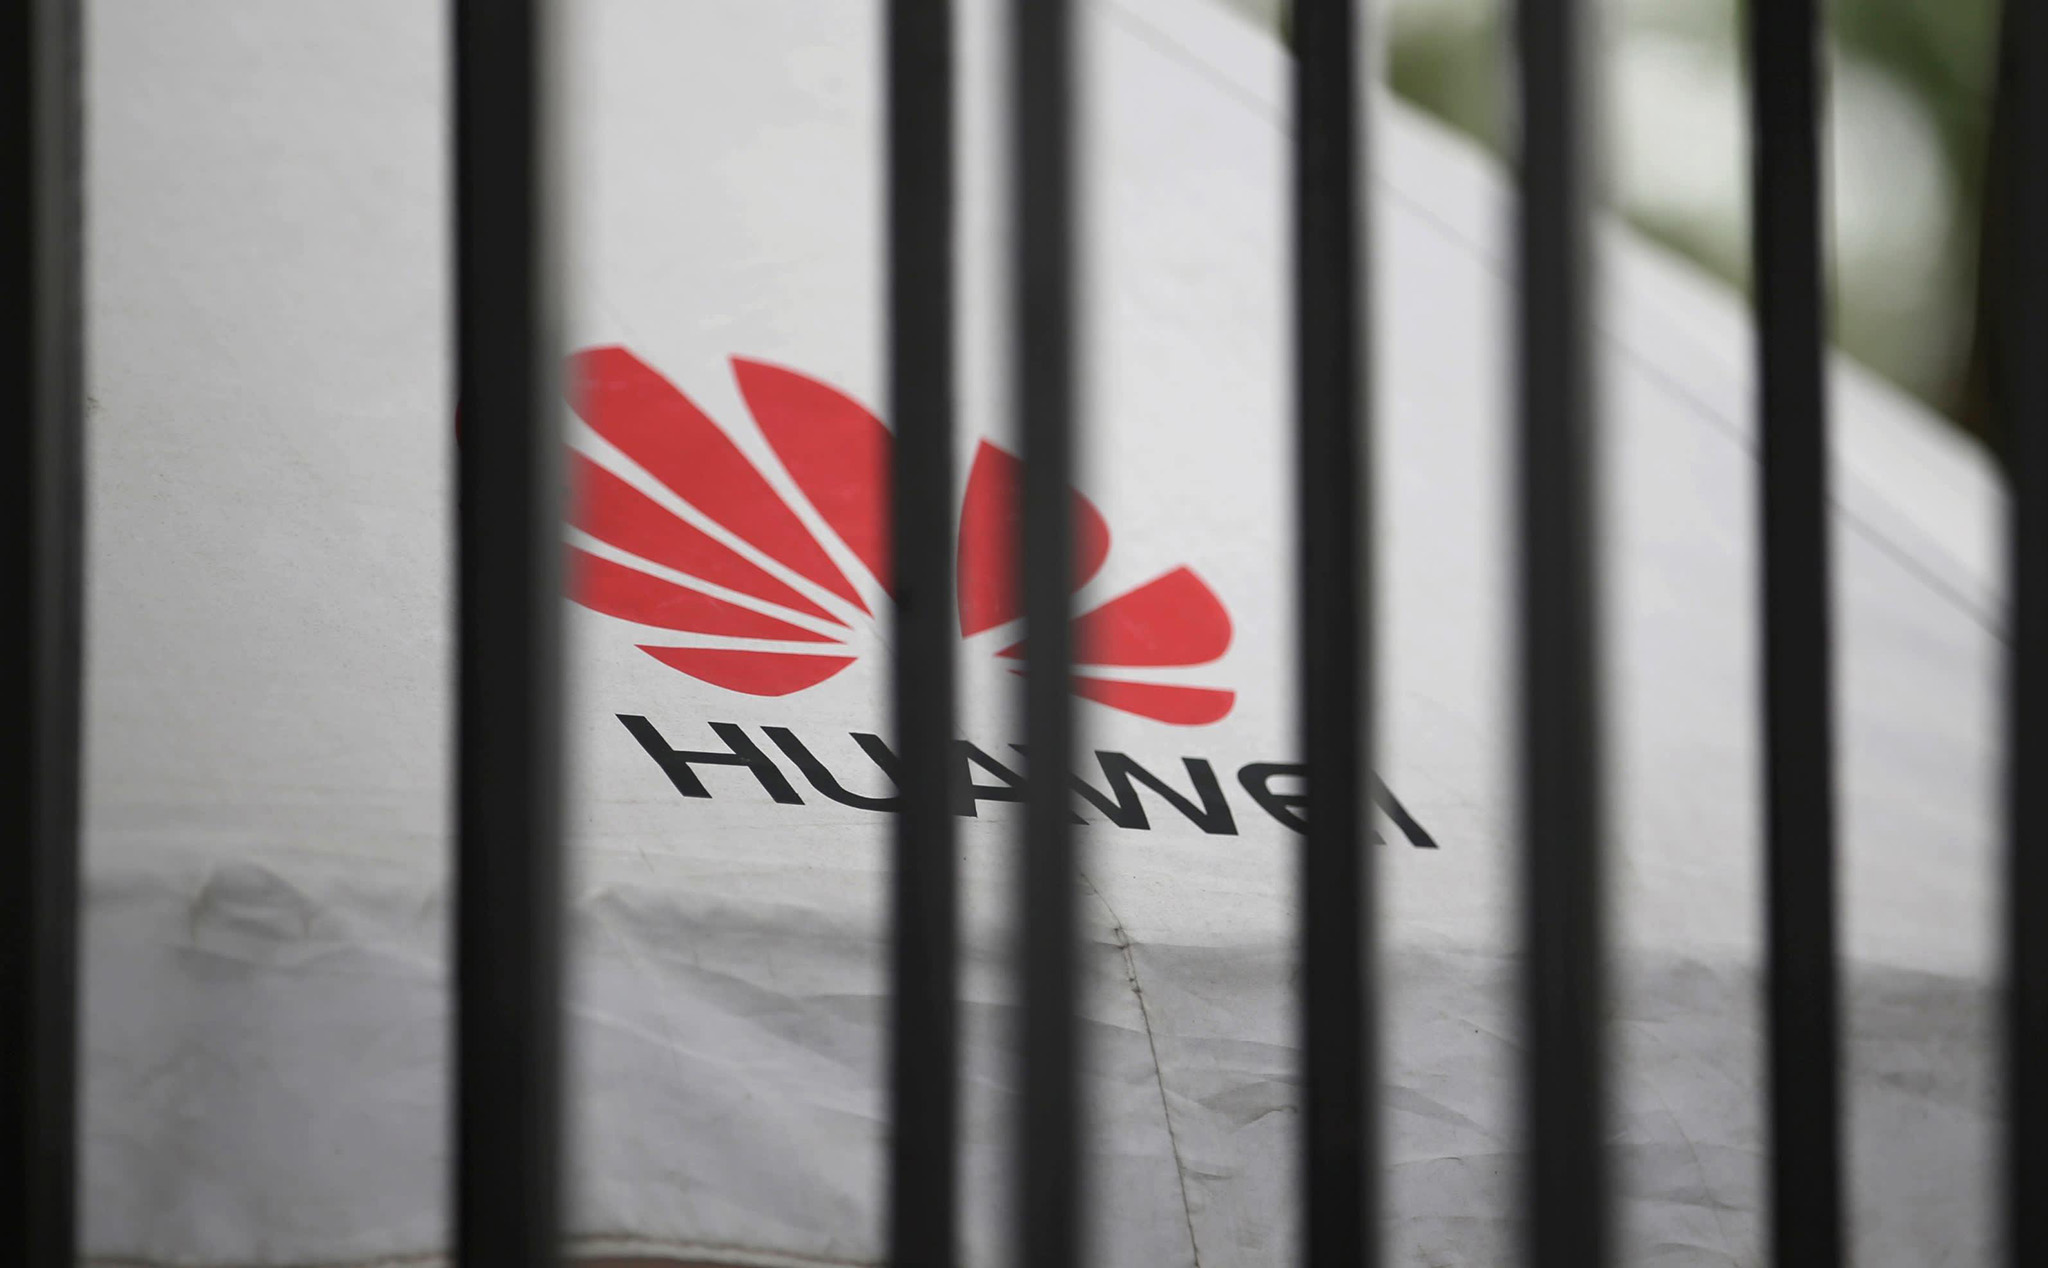 Anh sẽ bắt đầu cấm các nhà mạng dùng thiết bị 5G của Huawei từ tháng 9 năm 2021